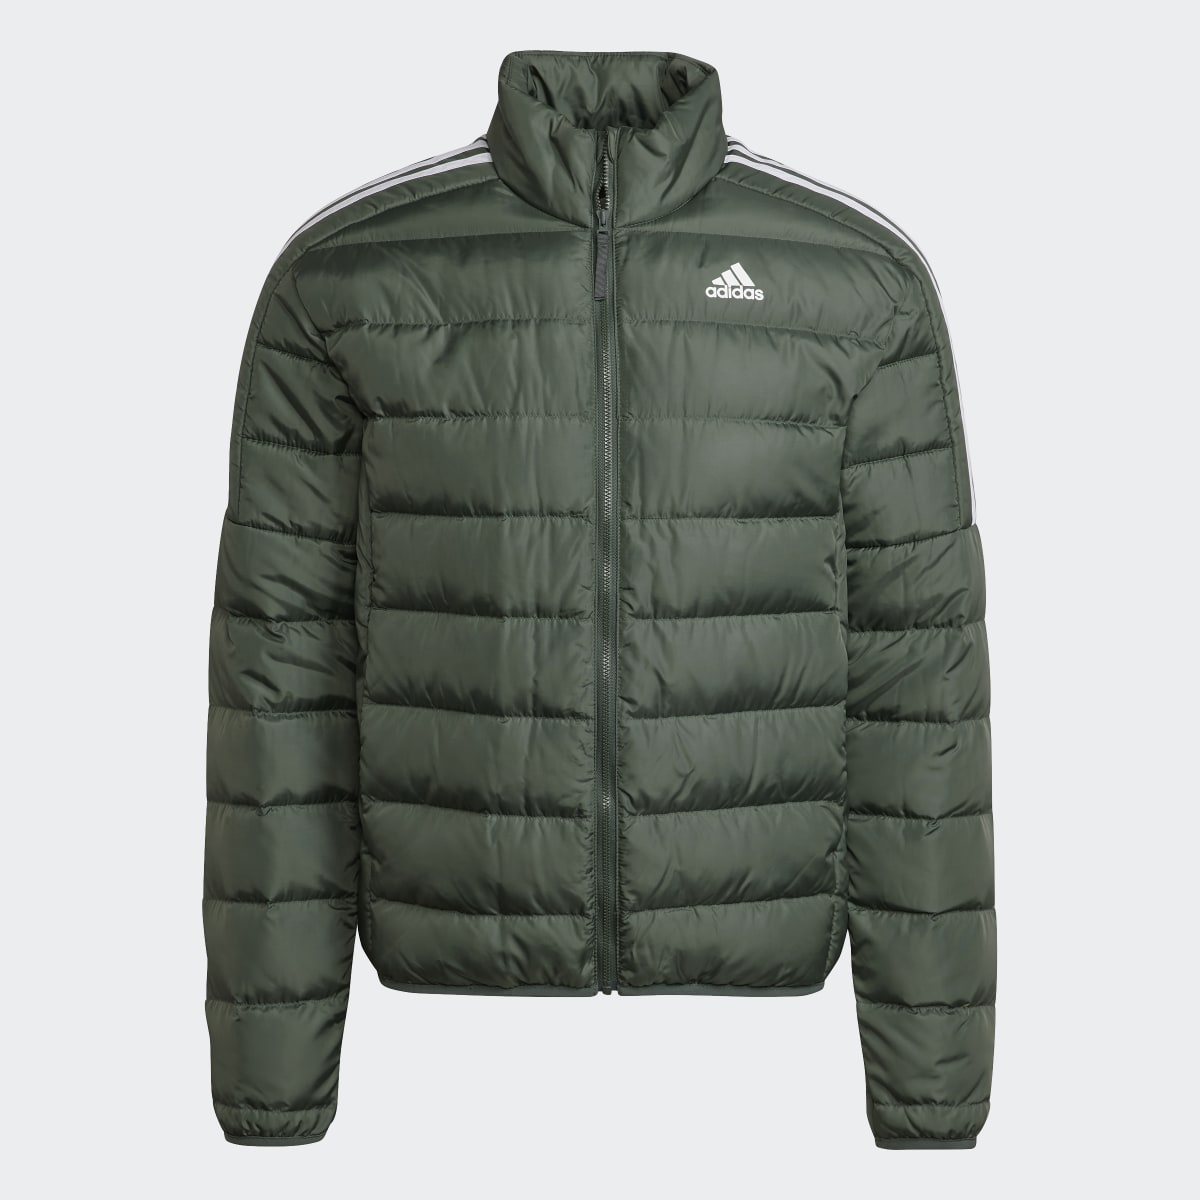 Adidas Essentials Down Jacket. 5